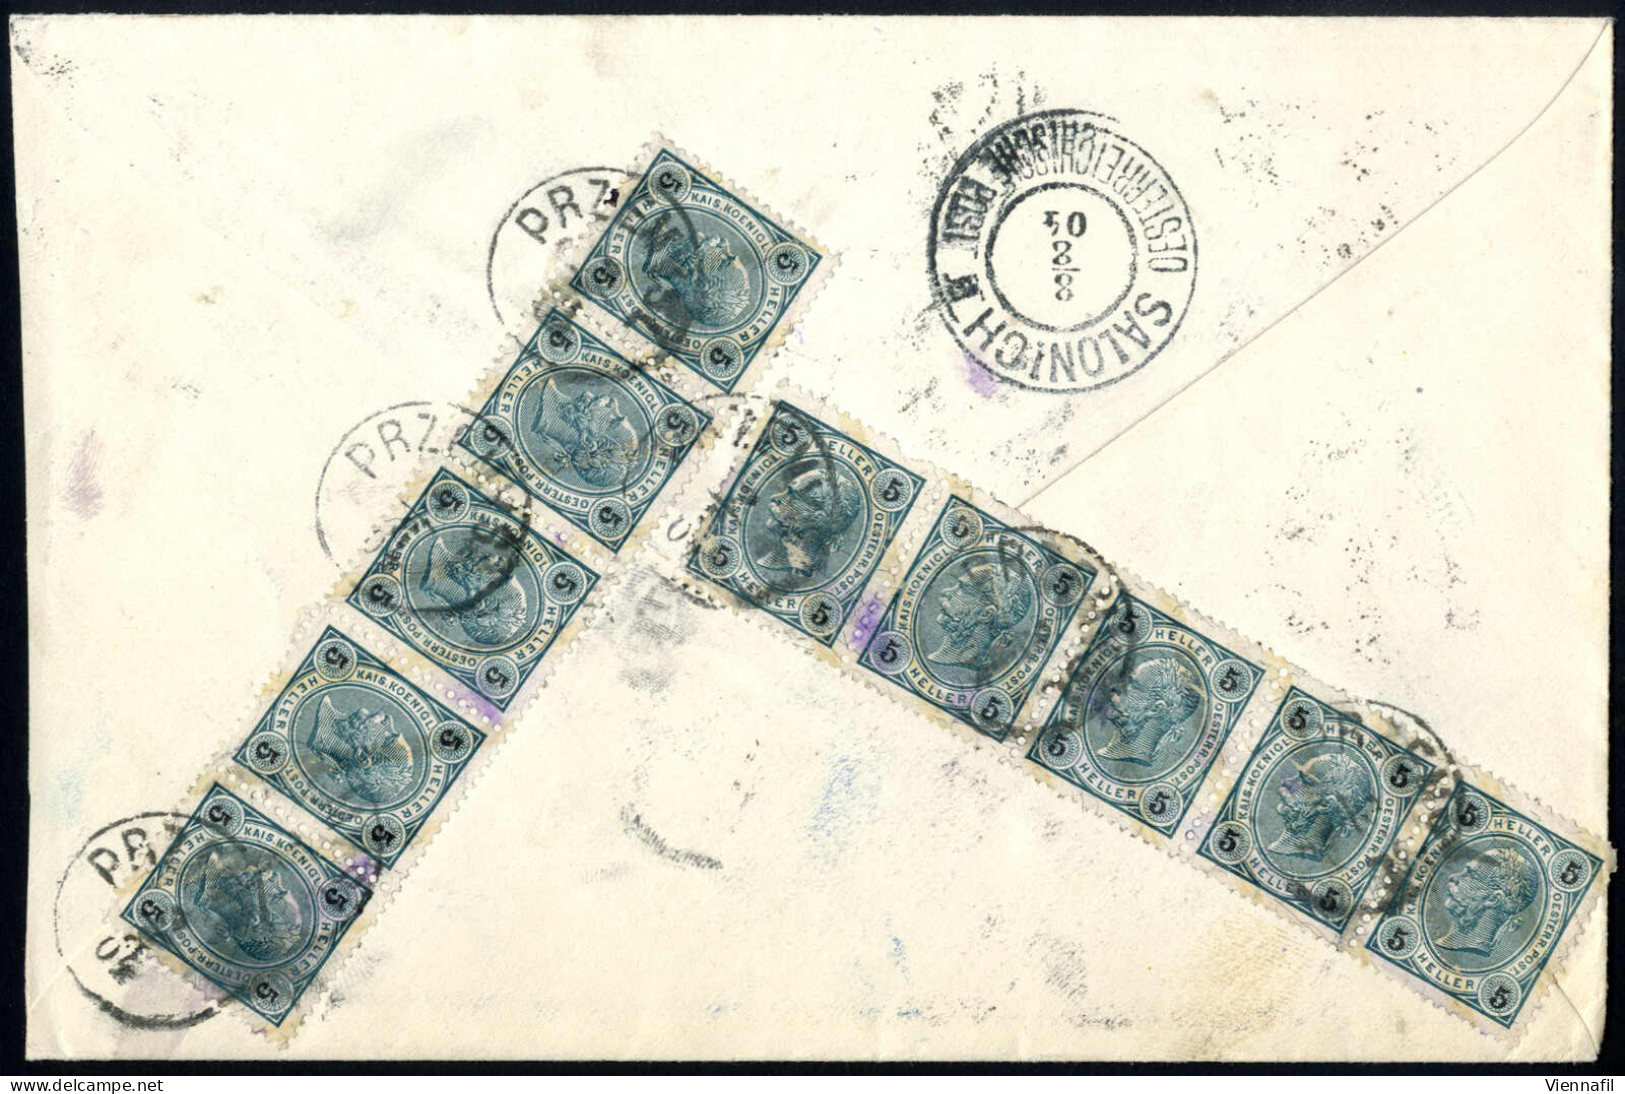 cover 1850/1907, 10 Lose früherer Auktionen, Briefe auch seltenere Stempel und Auslandsbriefe in die Levante, 2 eingesch